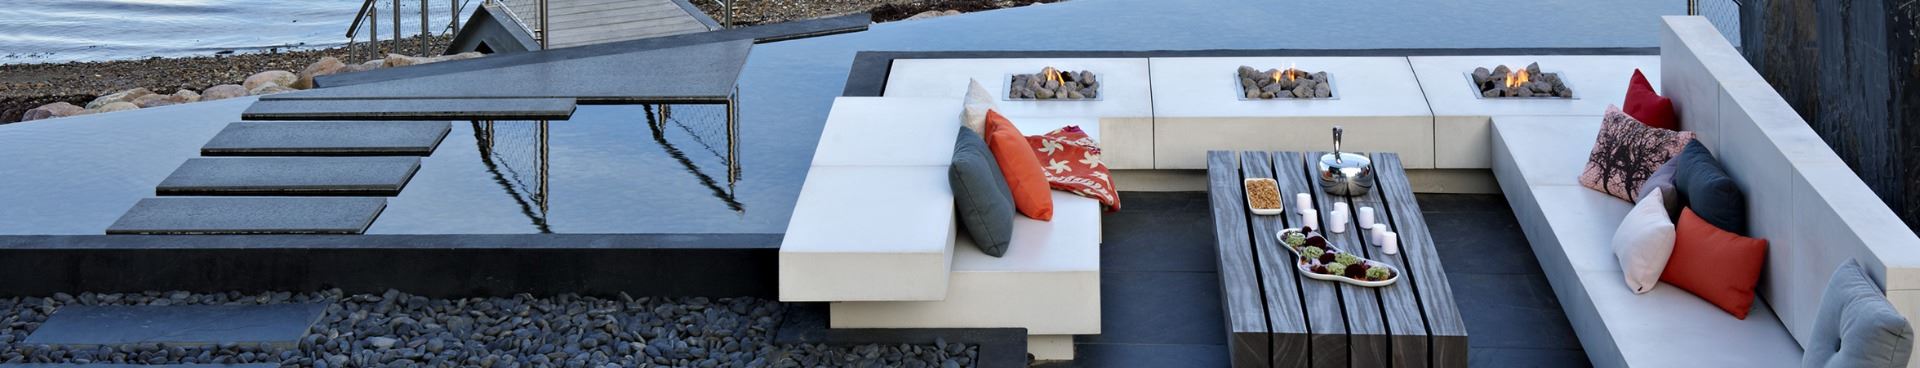 Hvidt loungemøbel på terrasse designet af havearkitekt Tor Haddeland